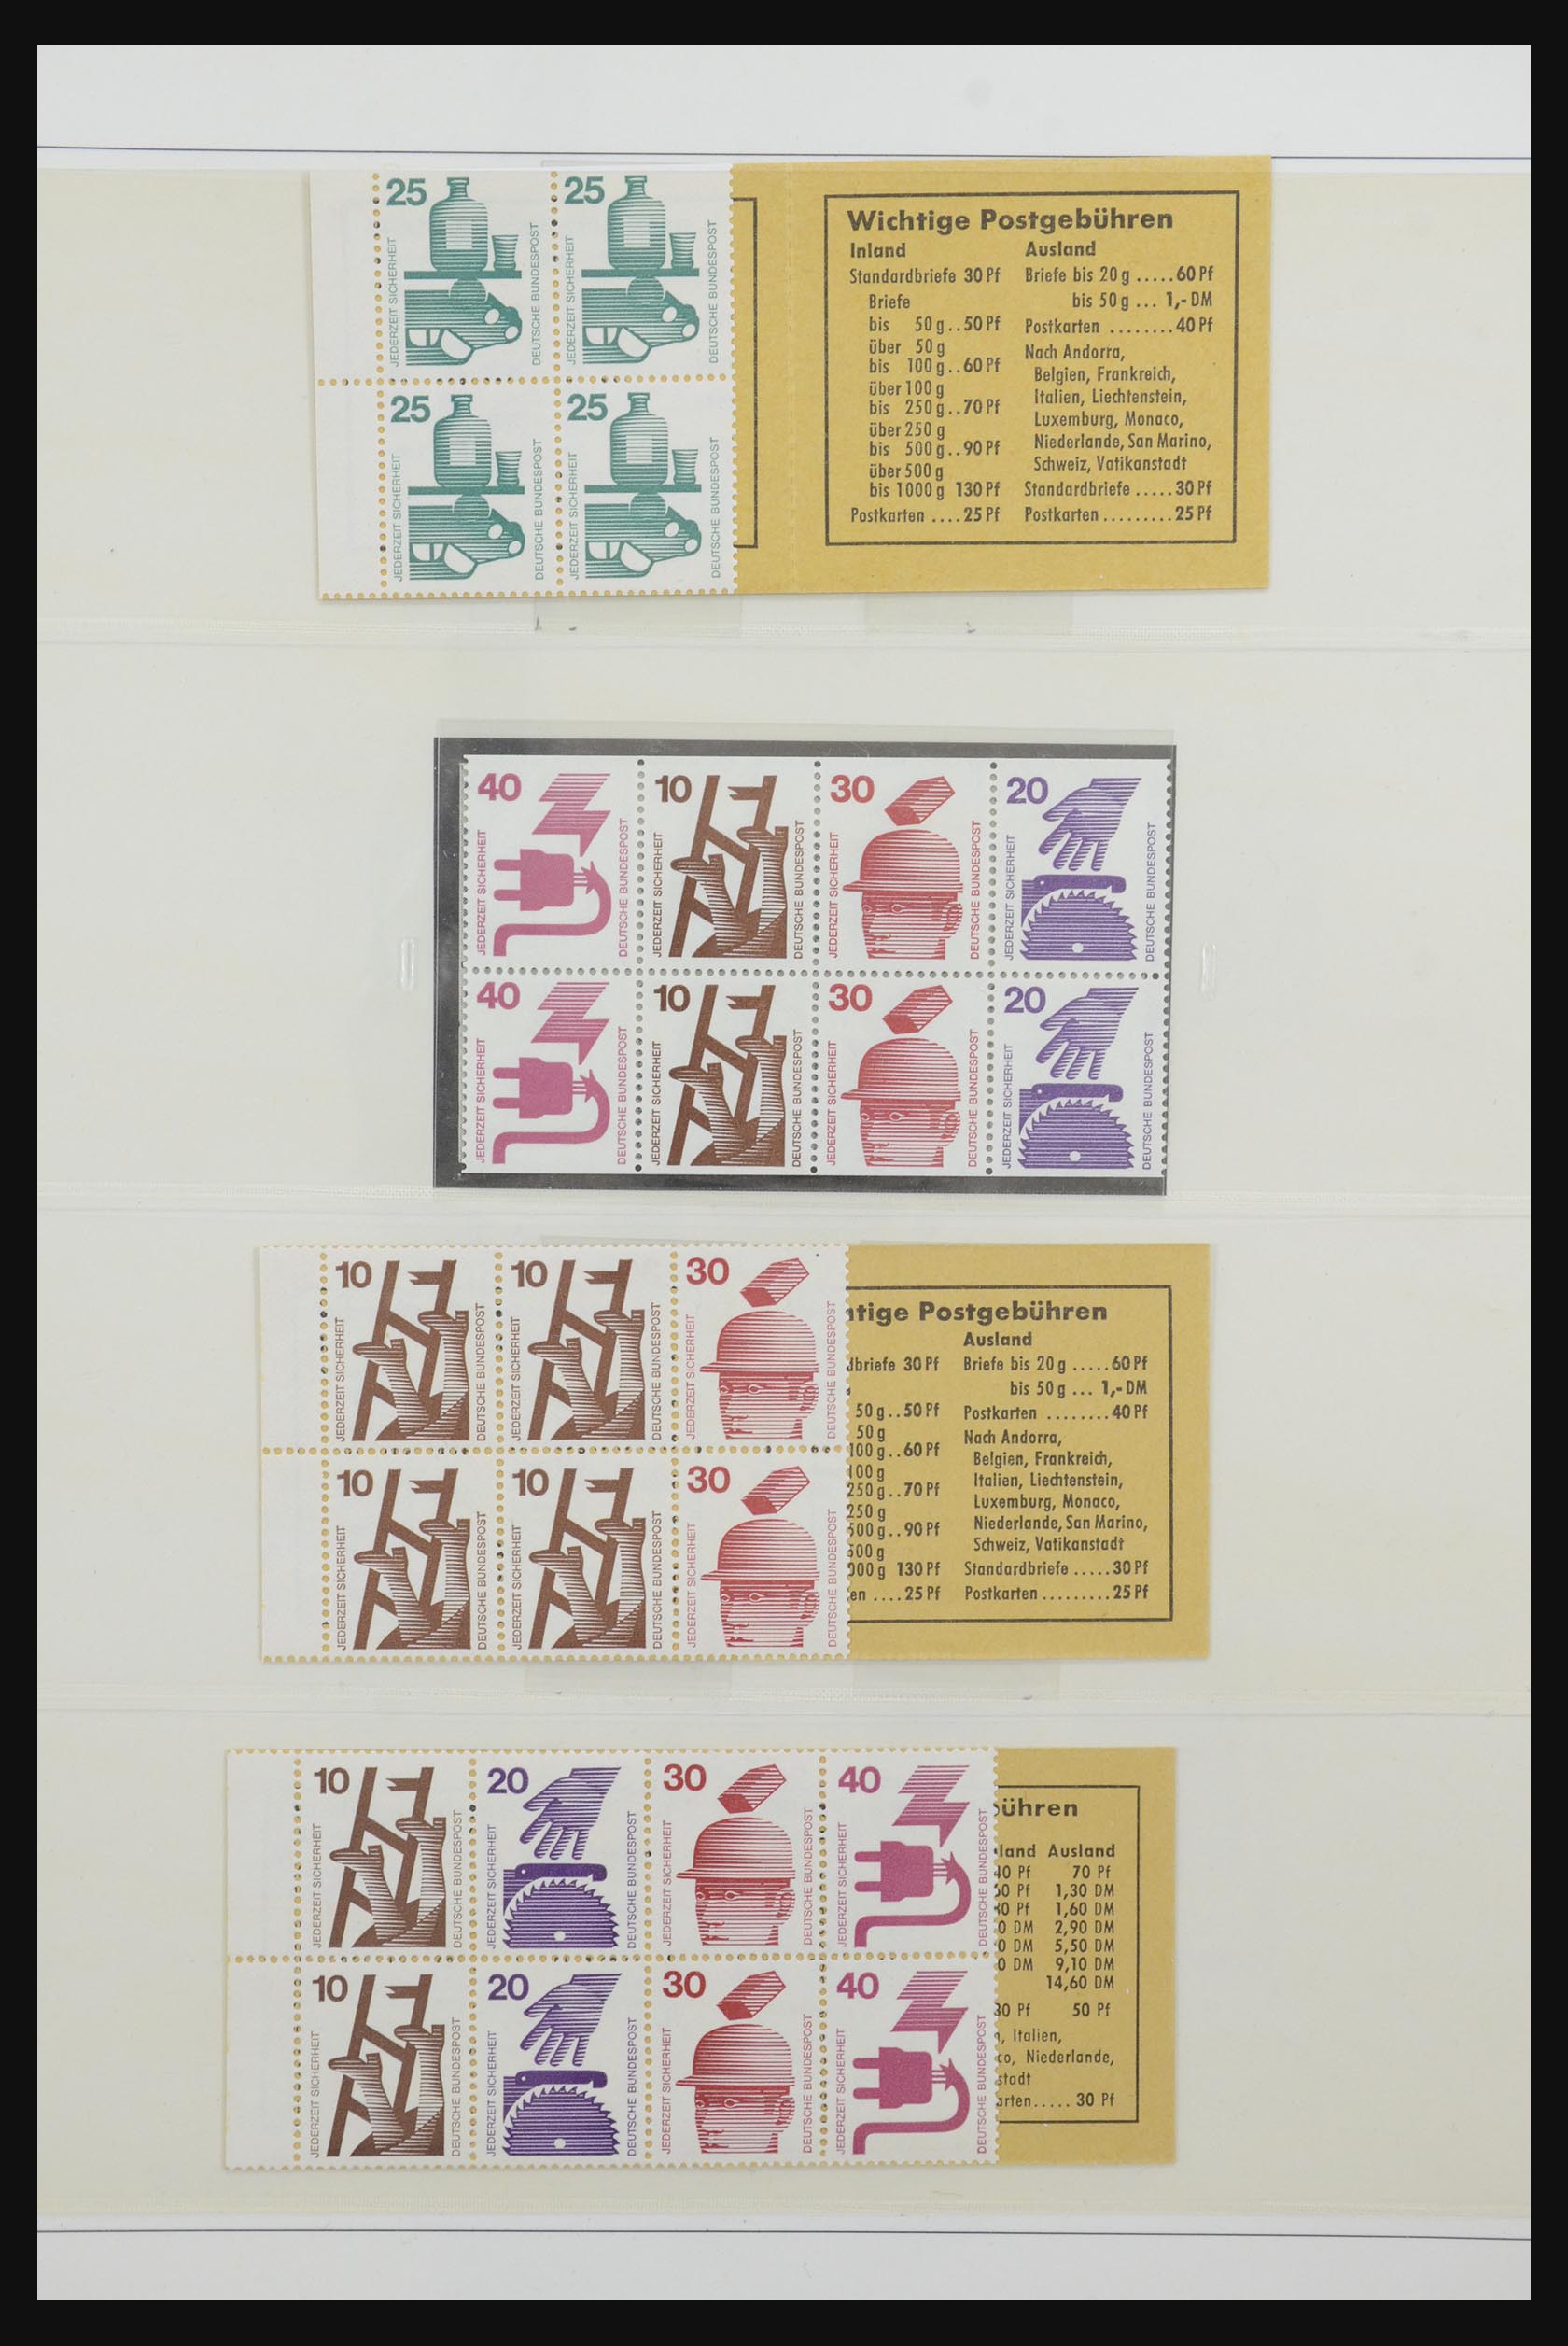 31842 053 - 31842 Bundespost combinaties 1951-2003.